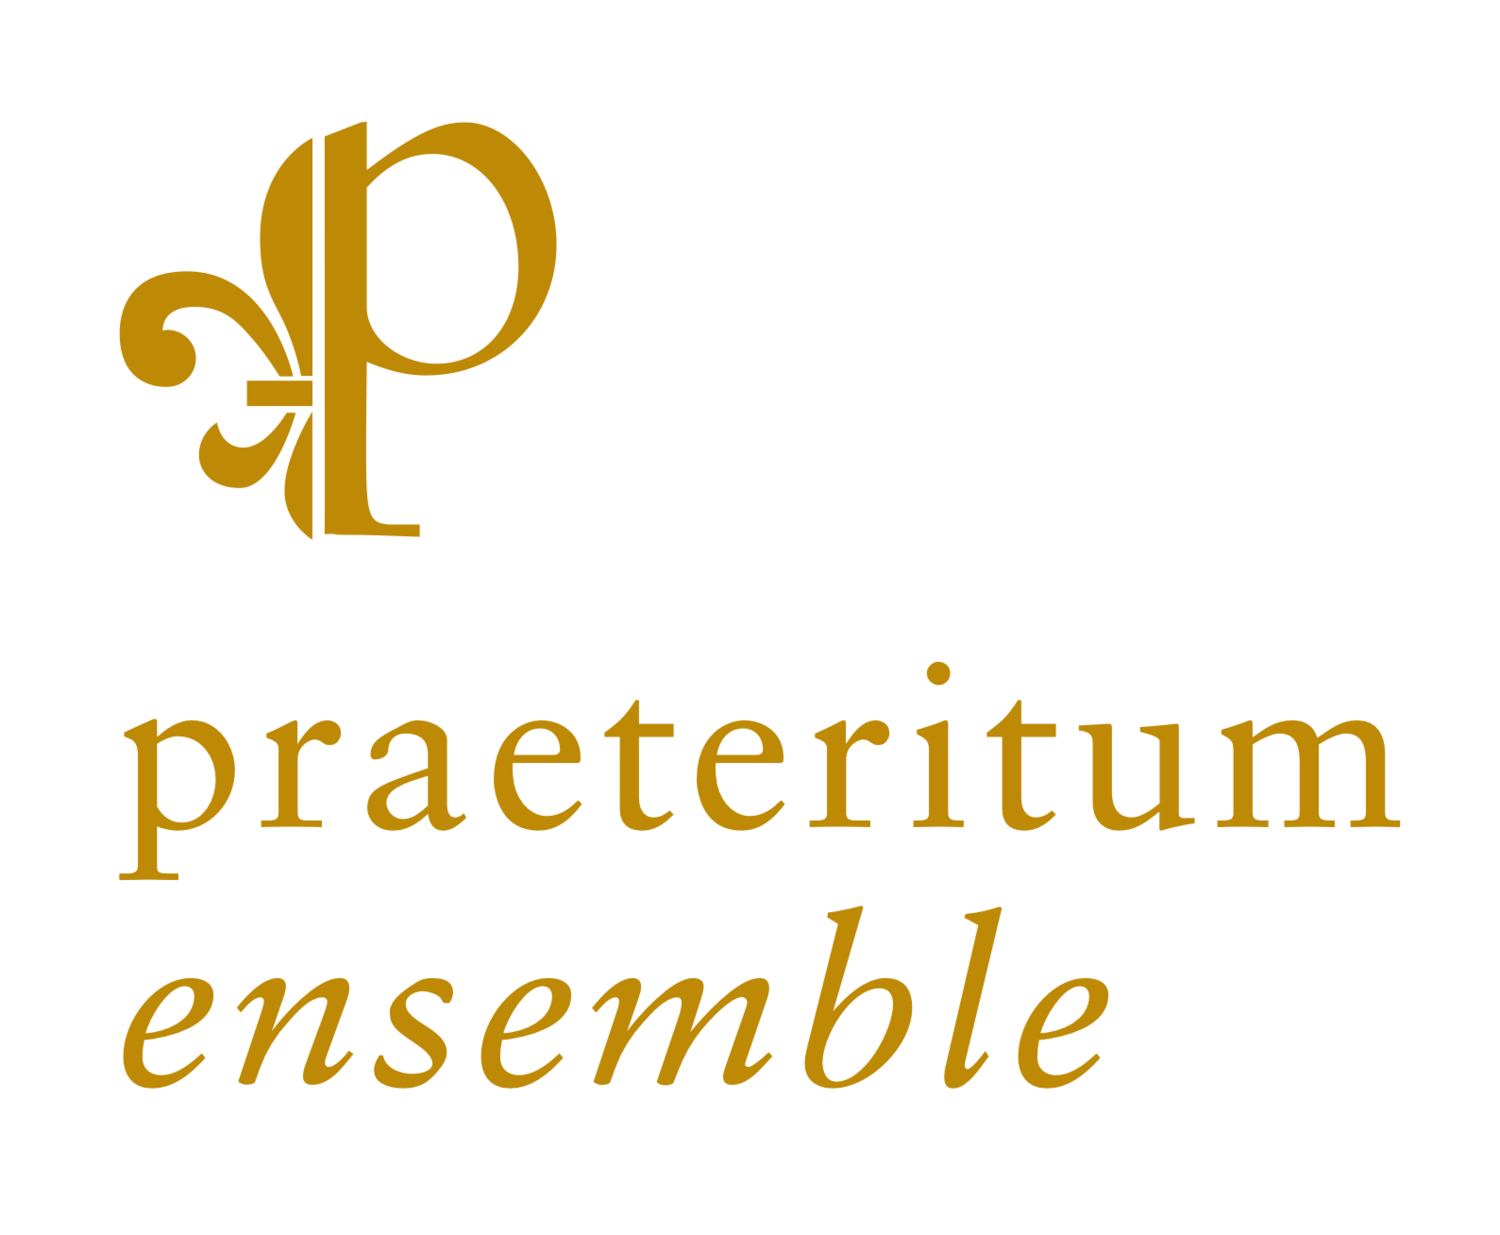 Ensemble Praeteritum